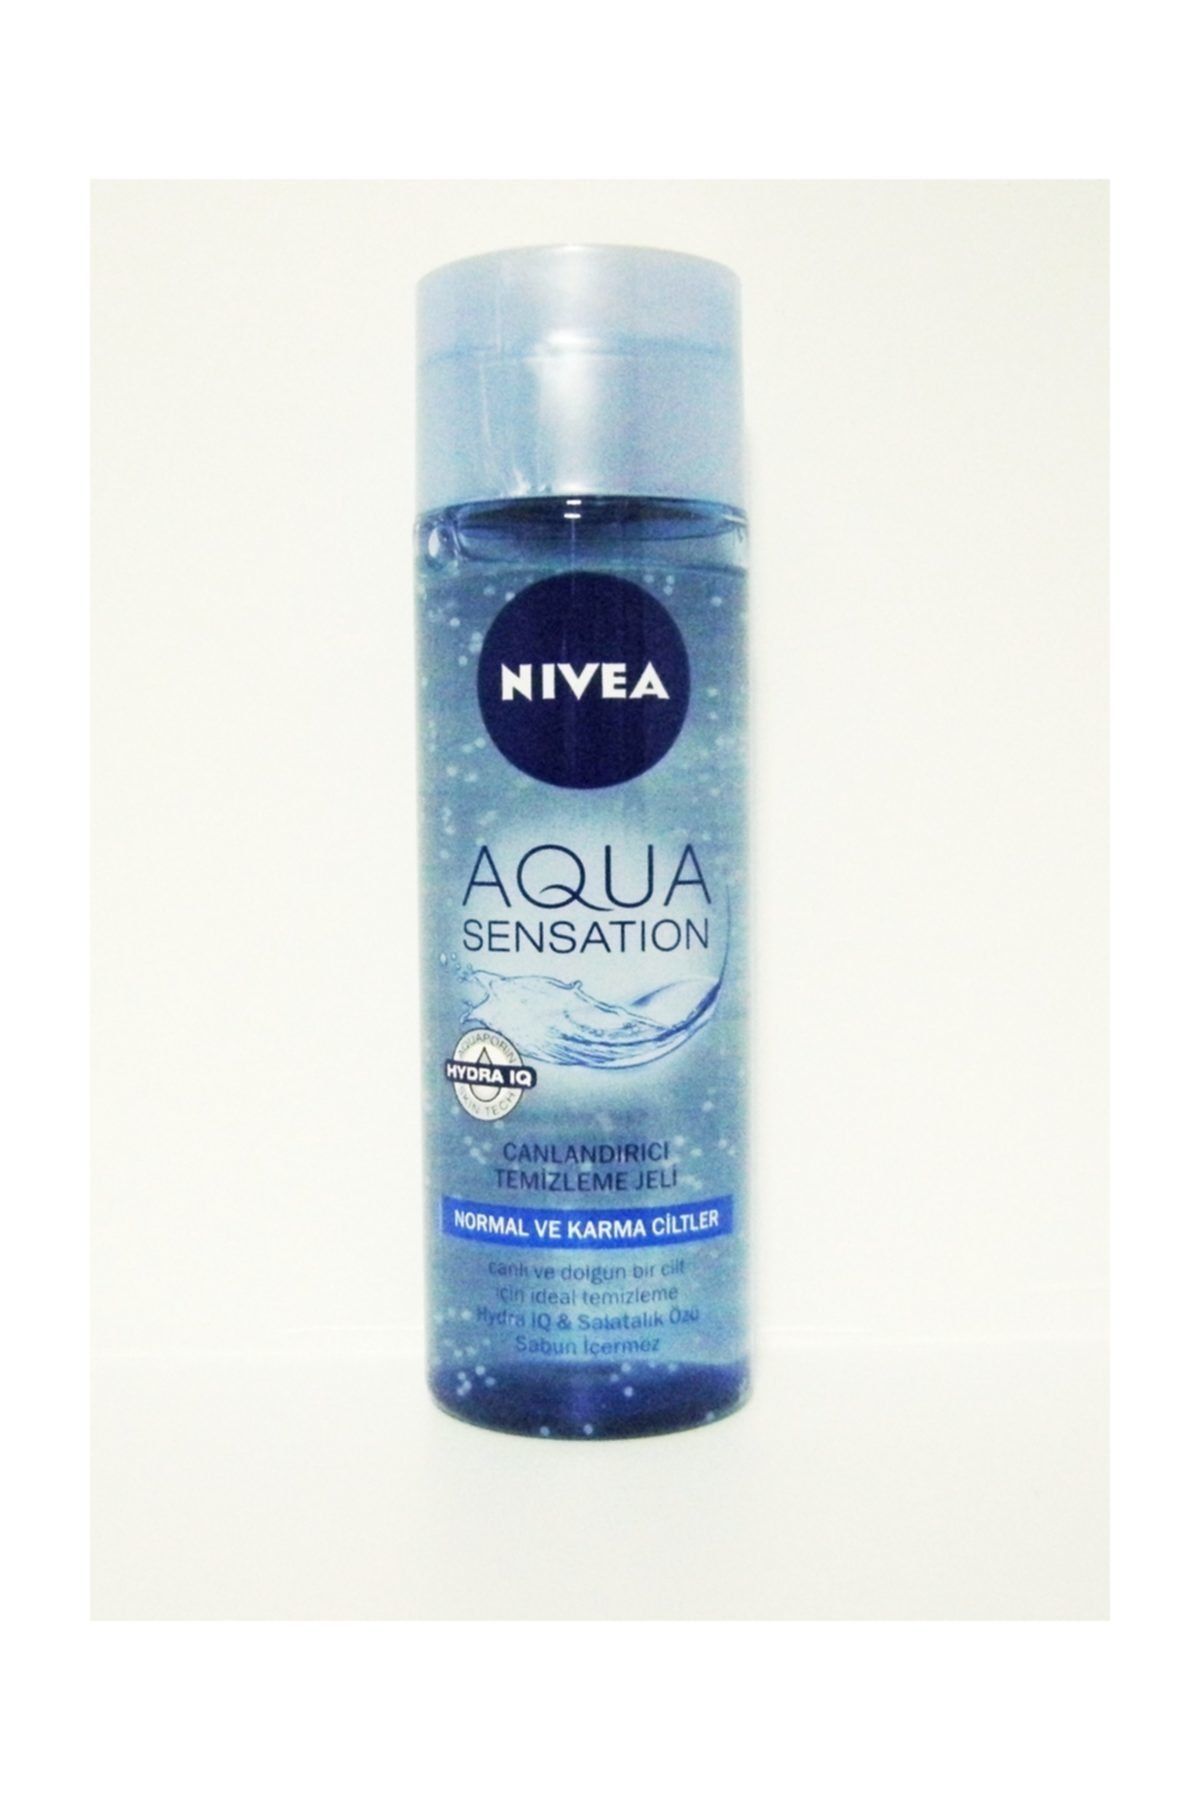 NIVEA Aqua Sensatıon Canlandırıcı Temizleme Jeli 200 ml.